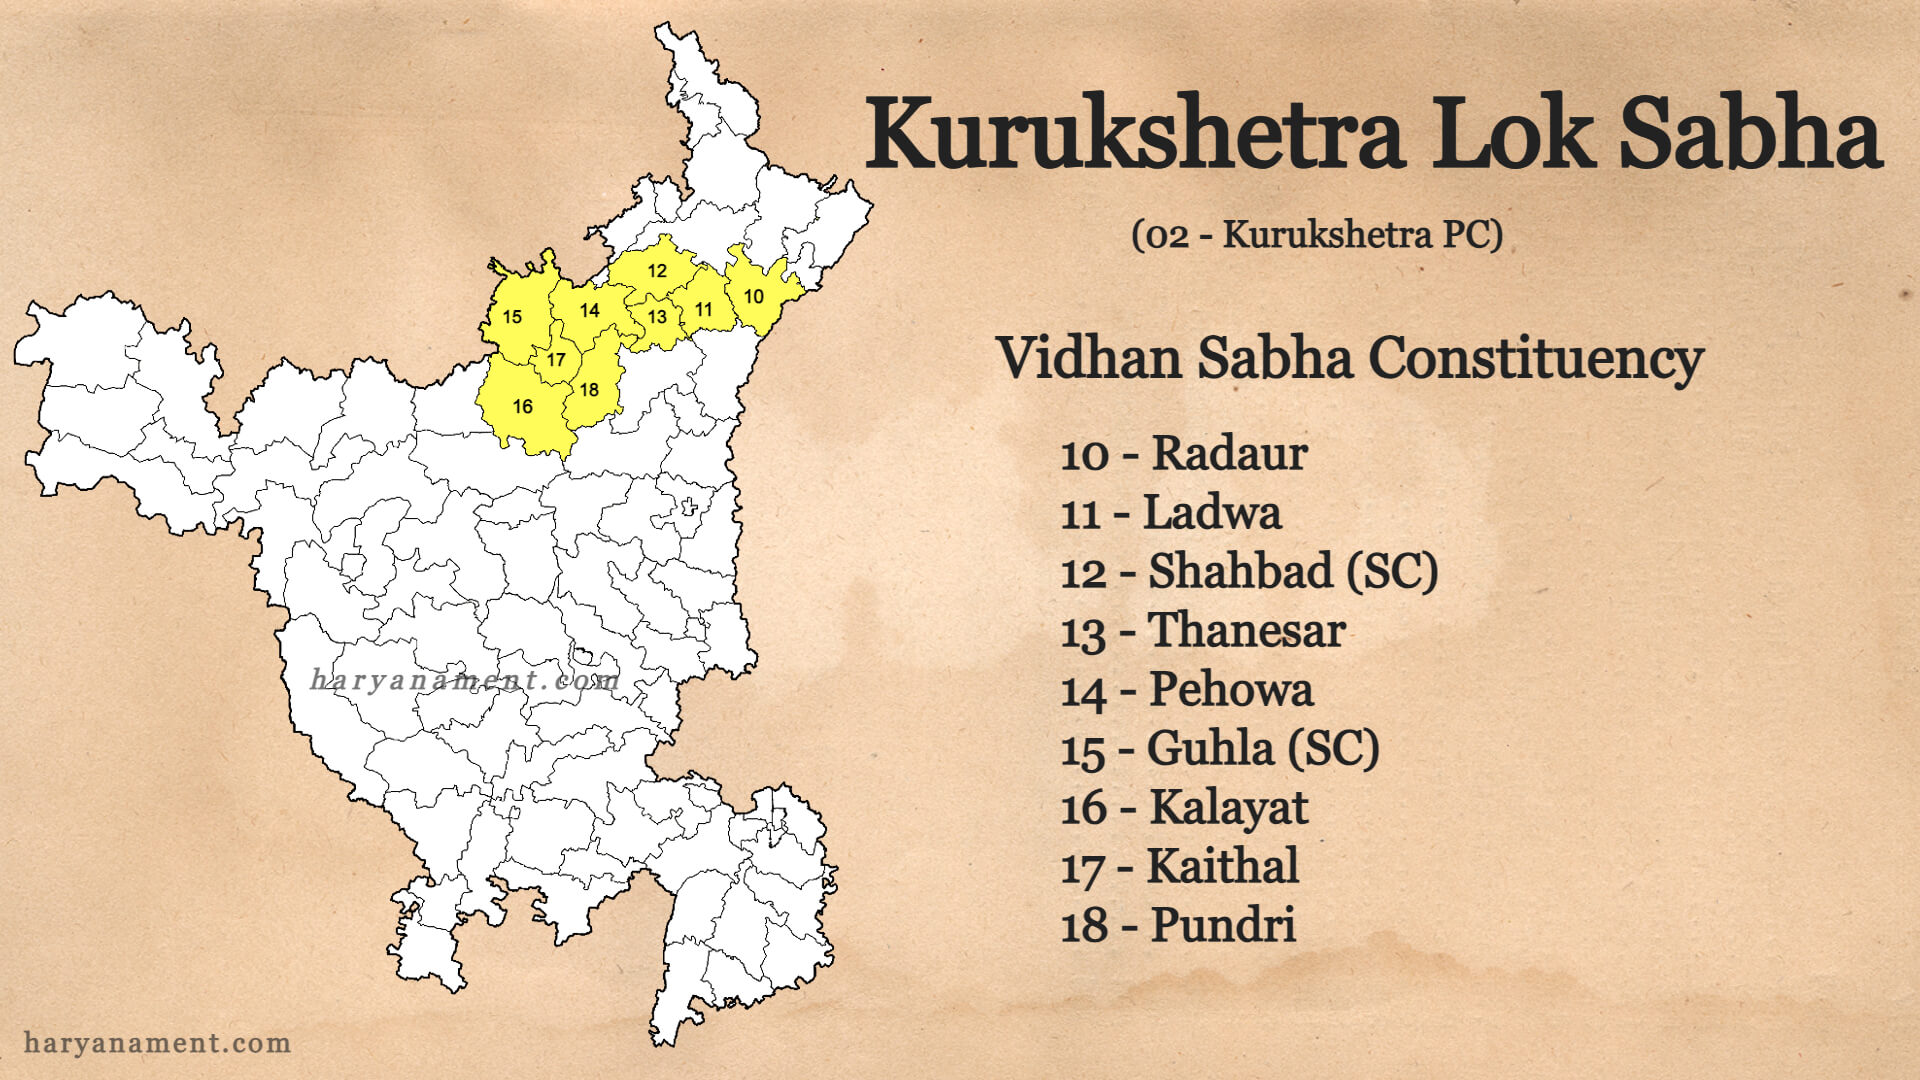 Kurukshetra Lok Sabha, Kurukshetra, Kurukshetra Parliament, kurukshetra news